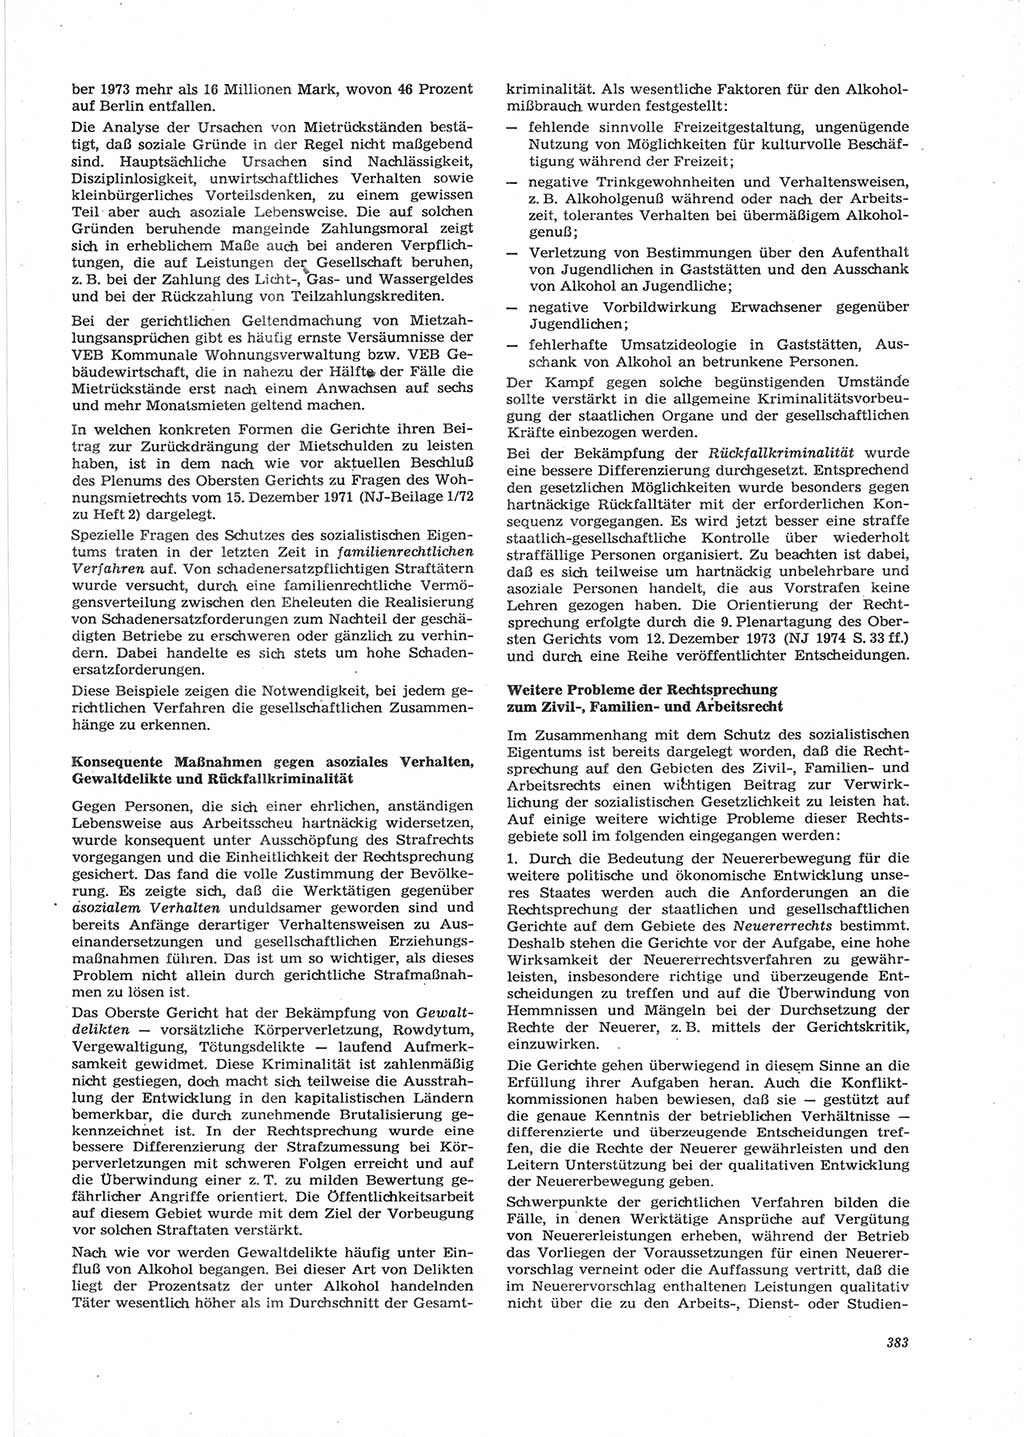 Neue Justiz (NJ), Zeitschrift für Recht und Rechtswissenschaft [Deutsche Demokratische Republik (DDR)], 28. Jahrgang 1974, Seite 383 (NJ DDR 1974, S. 383)